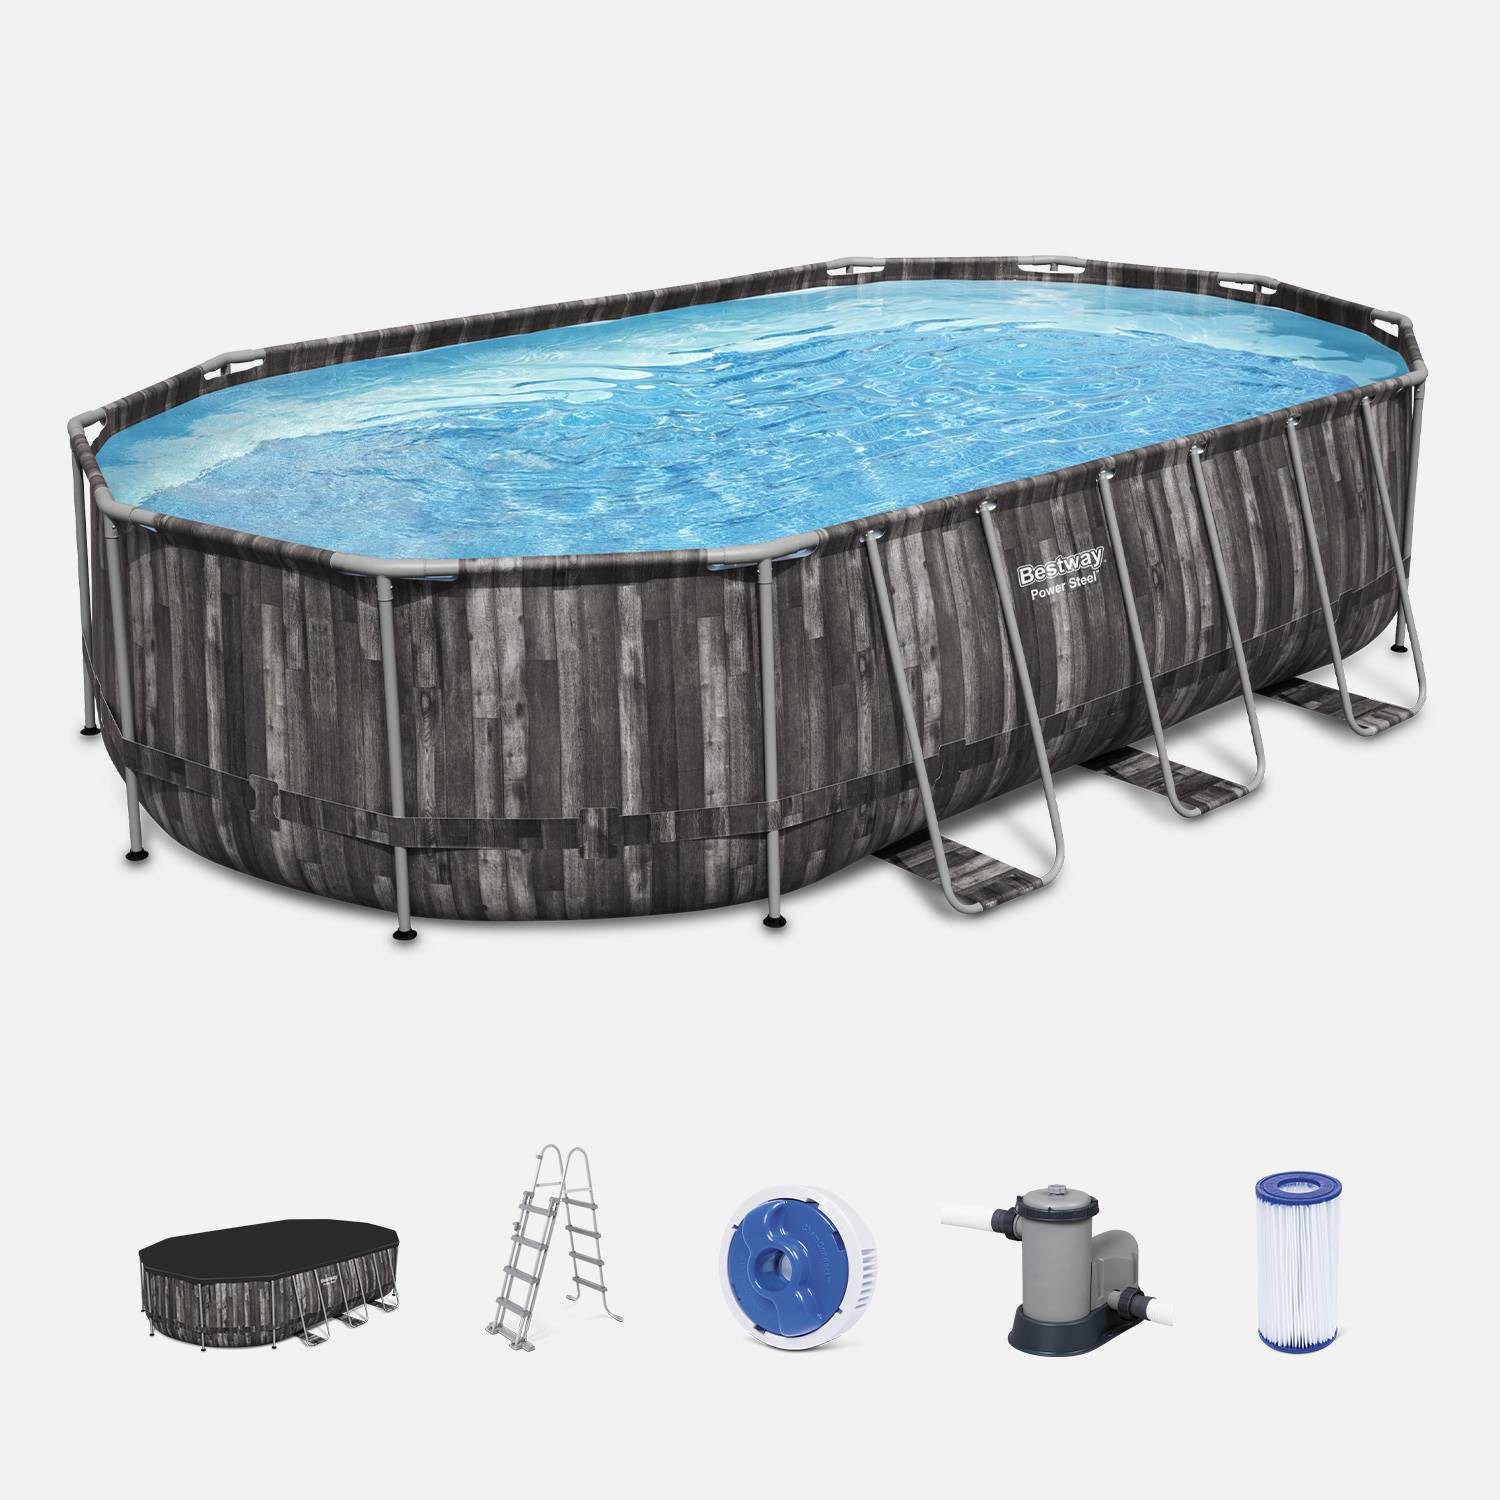 Kit piscine géante complet BESTWAY – Spinelle – piscine ovale tubulaire 6x3 m motif aspect bois, pompe de filtration, échelle, bâche de protection, diffuseur ChemConnect Photo1